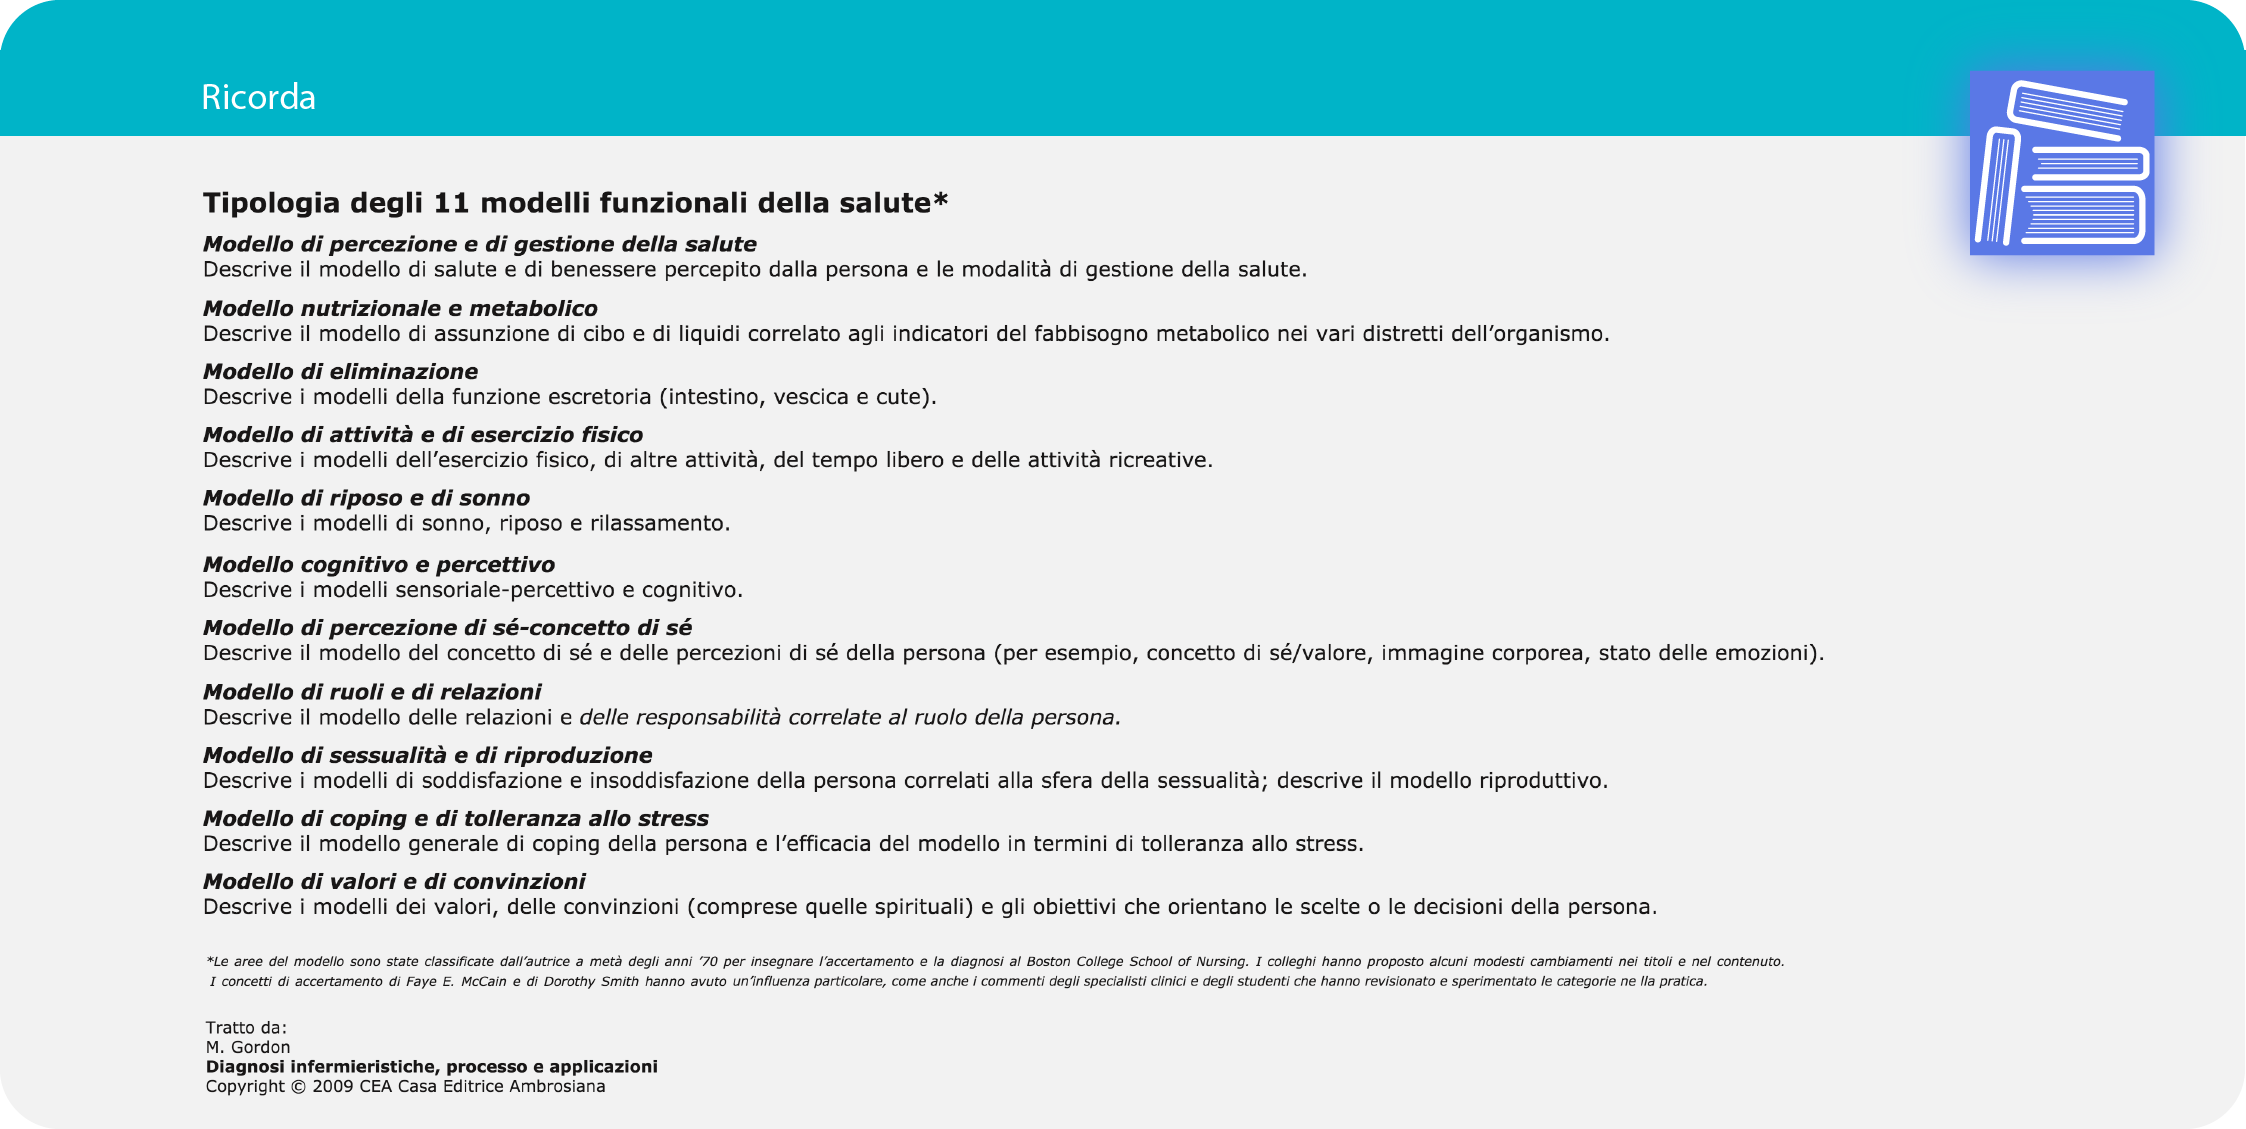 Florence - Piattaforma Didattica per le scienze infermieristiche